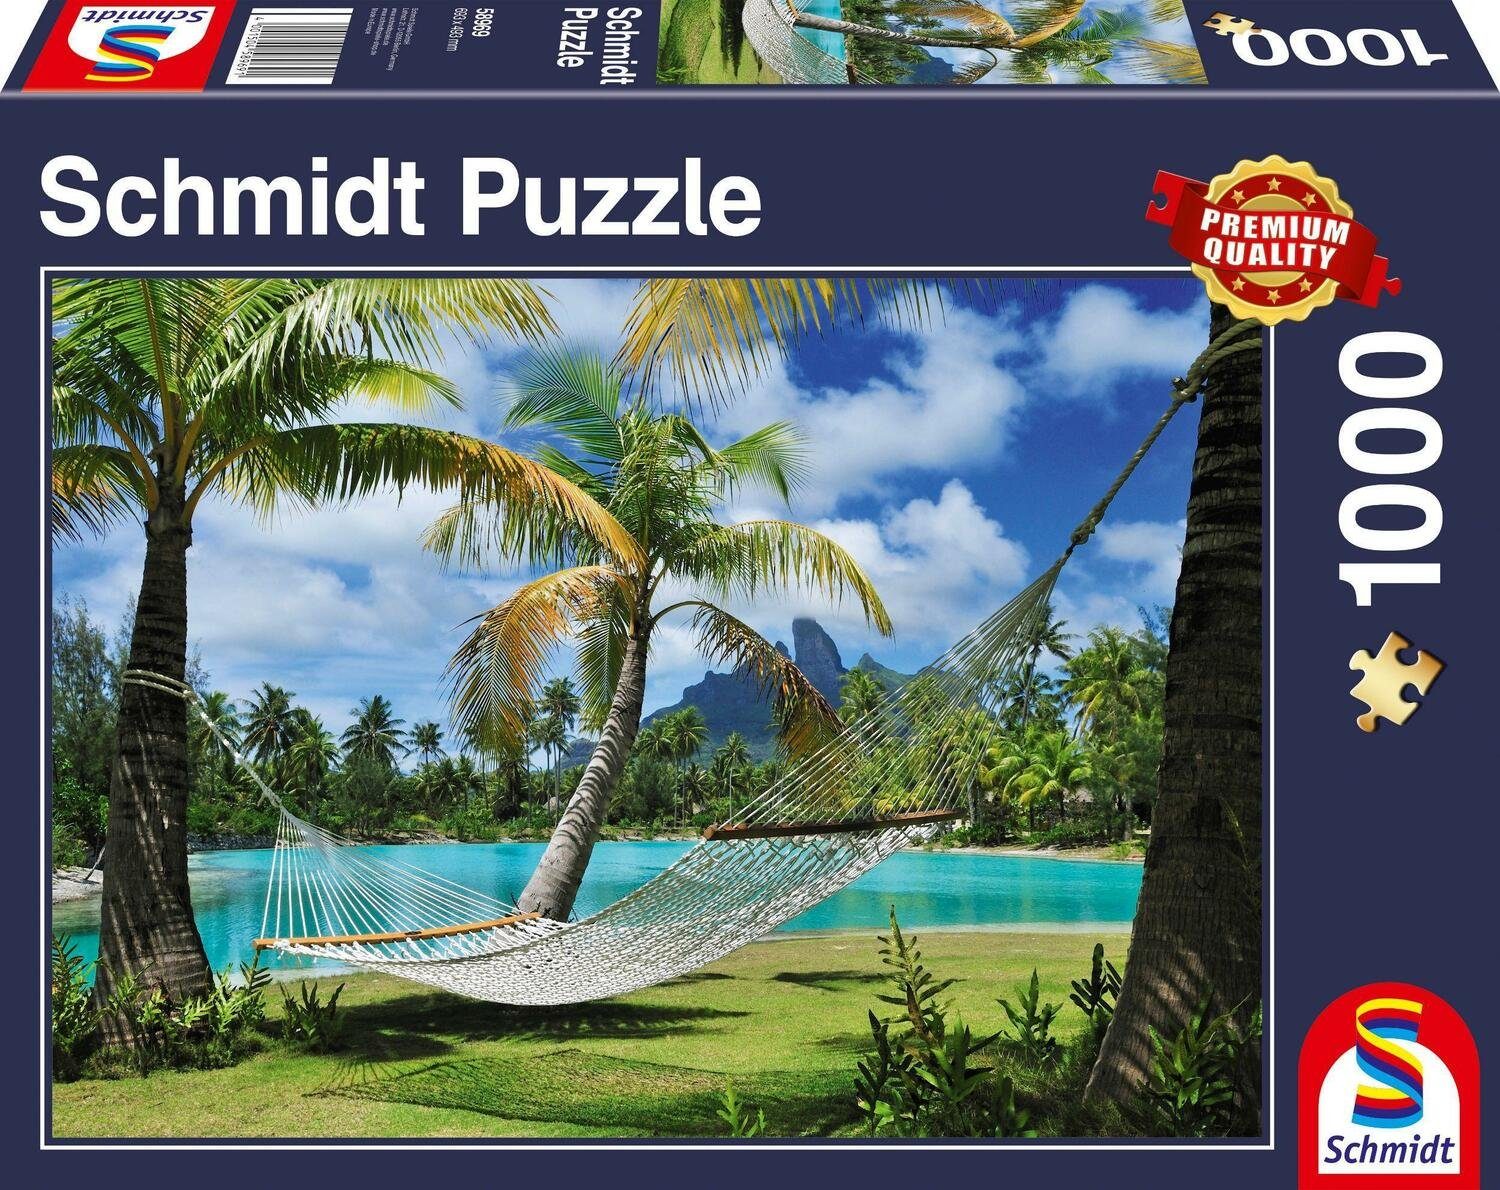 Schmidt Spiele Puzzle Auszeit Puzzle 1.000 Teile, 1000 Puzzleteile